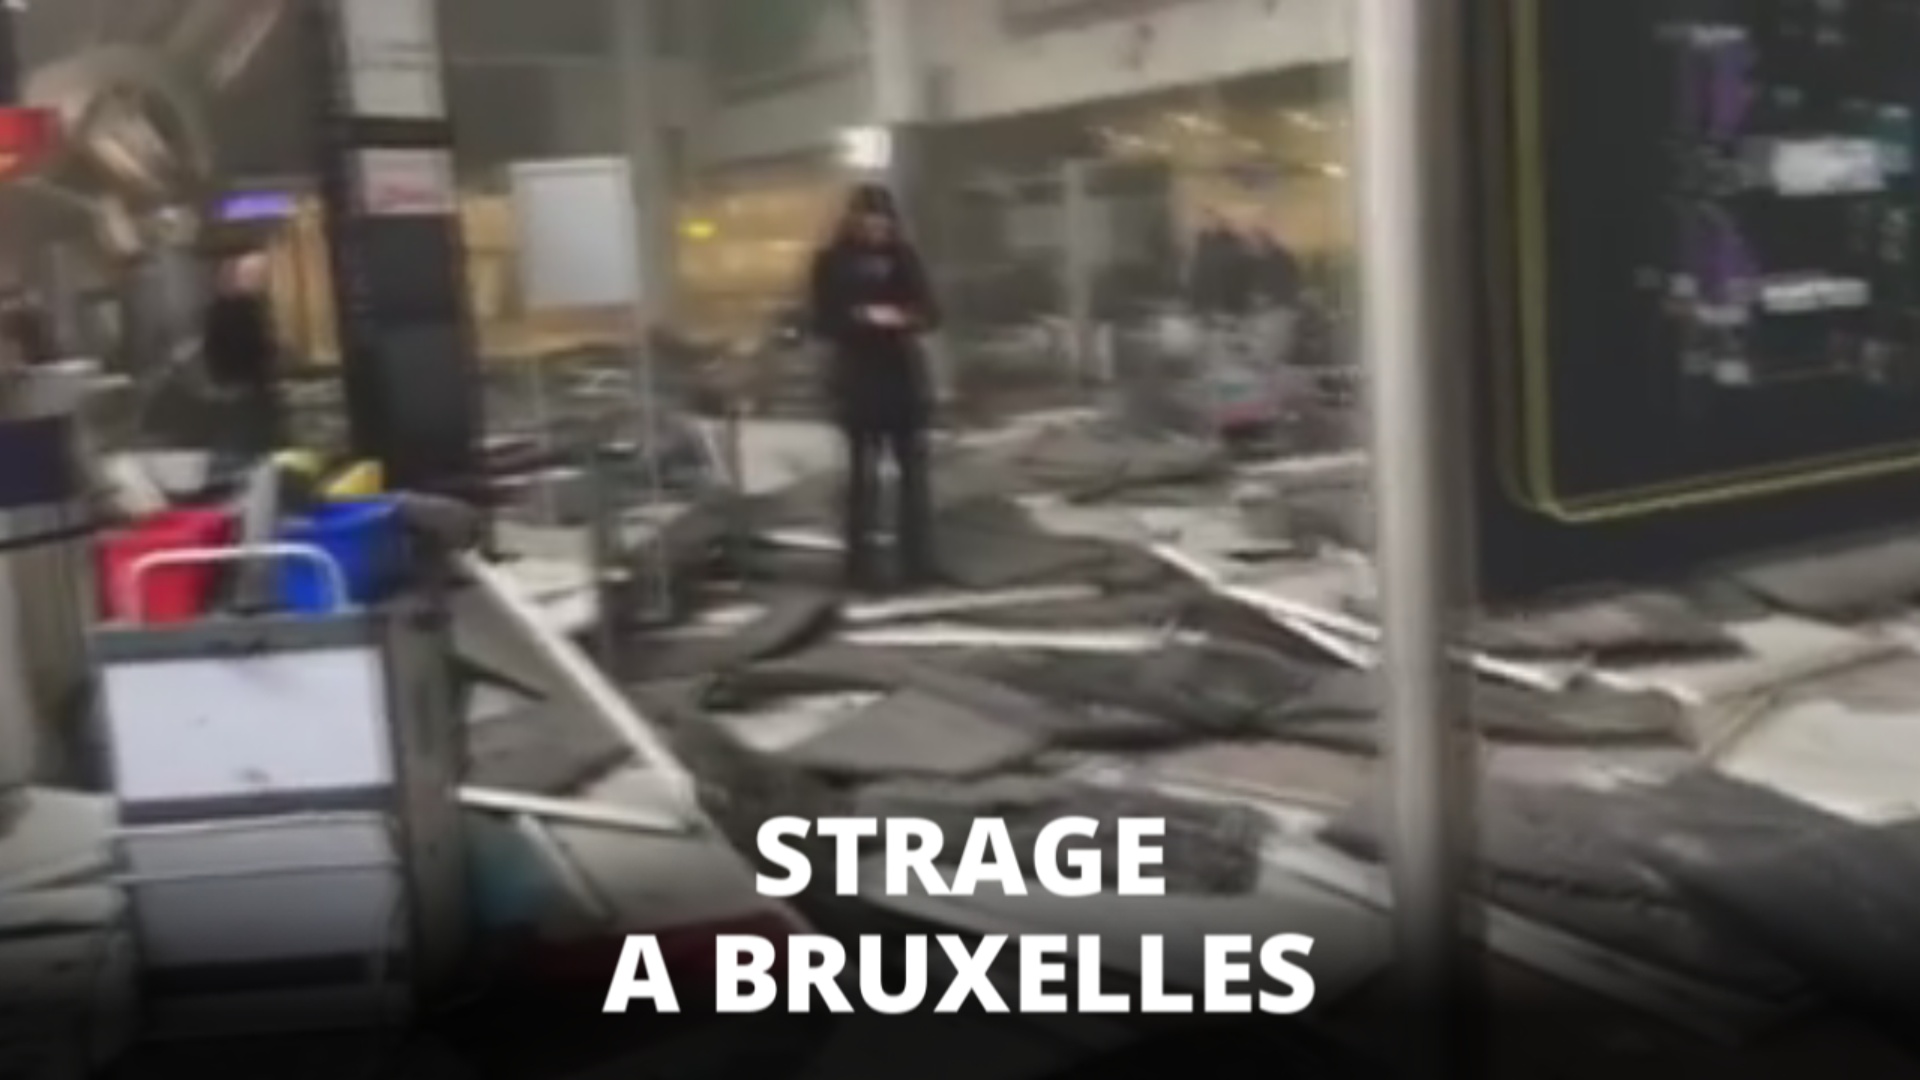 Bruxelles, l'attacco visto da un testimone oculare